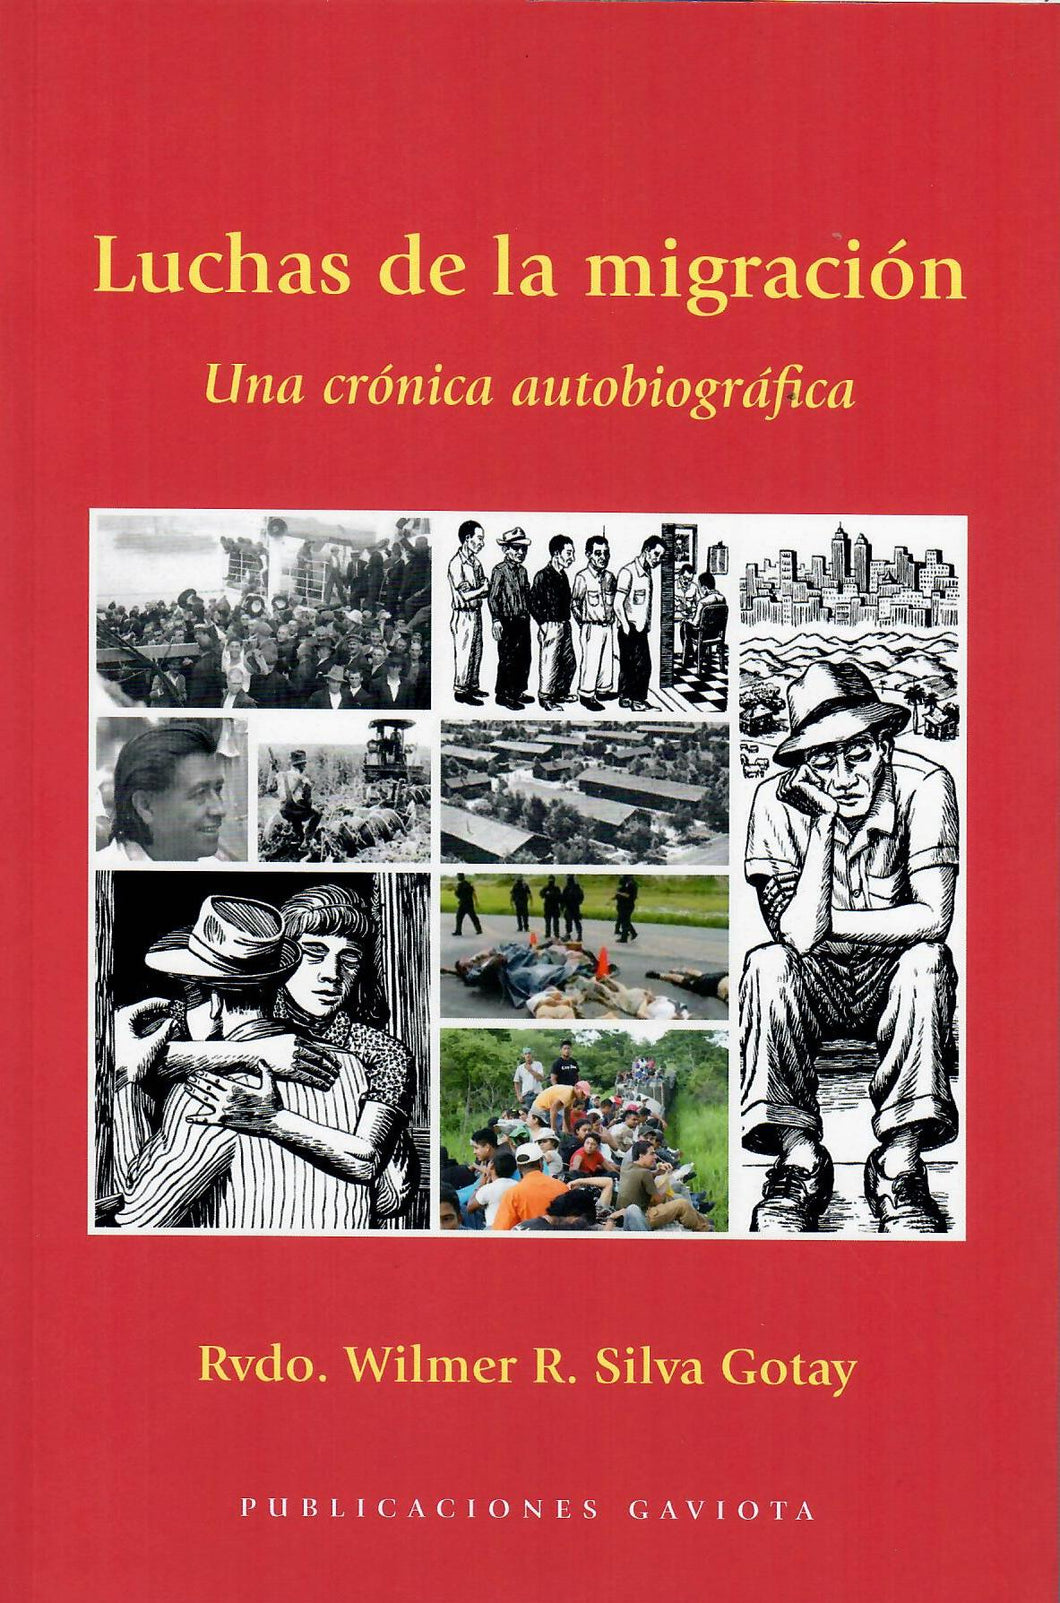 LUCHAS DE LA MIGRACIÓN: UNA CRÓNICA AUTOBIOGRÁFICA - Rvdo. Wilmer R. Silva Gotay